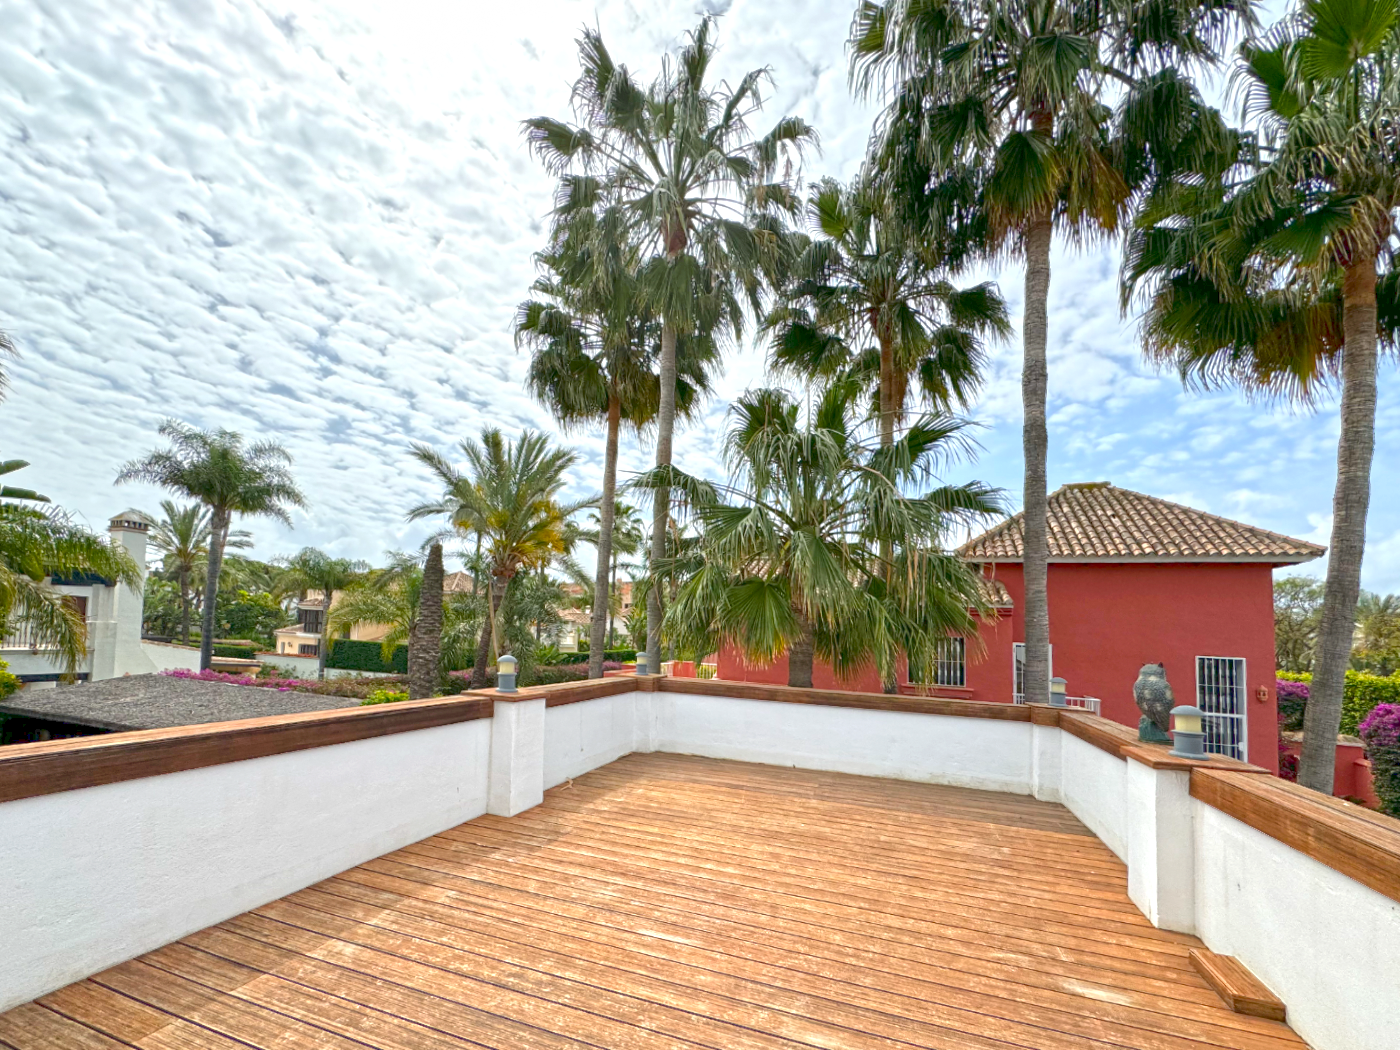 Impresionante villa de cuatro dormitorios situada cerca de la playa en Las Mimosas, Puerto Banus